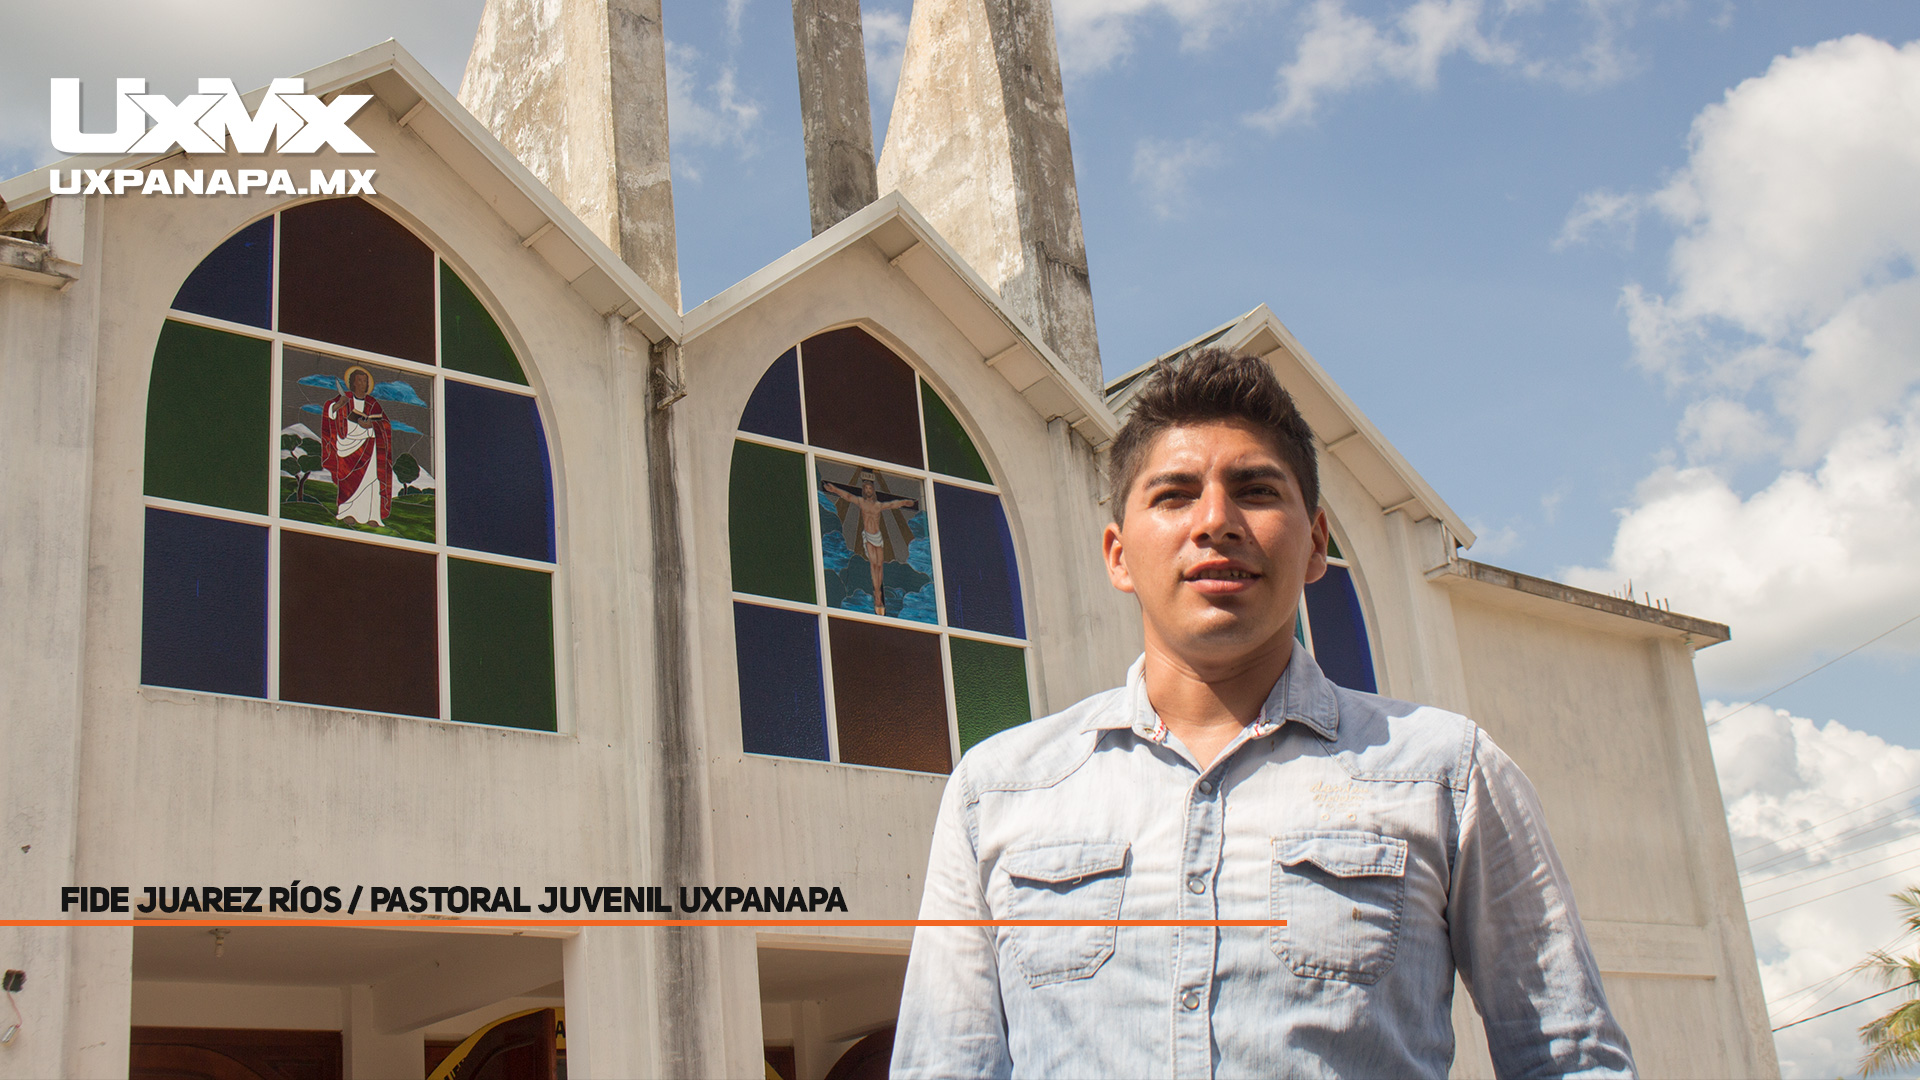 Pastoral Juvenil de la Iglesia San Marcos llevará a cabo juegos deportivos  en Poblado 7. - UxpanapaMX